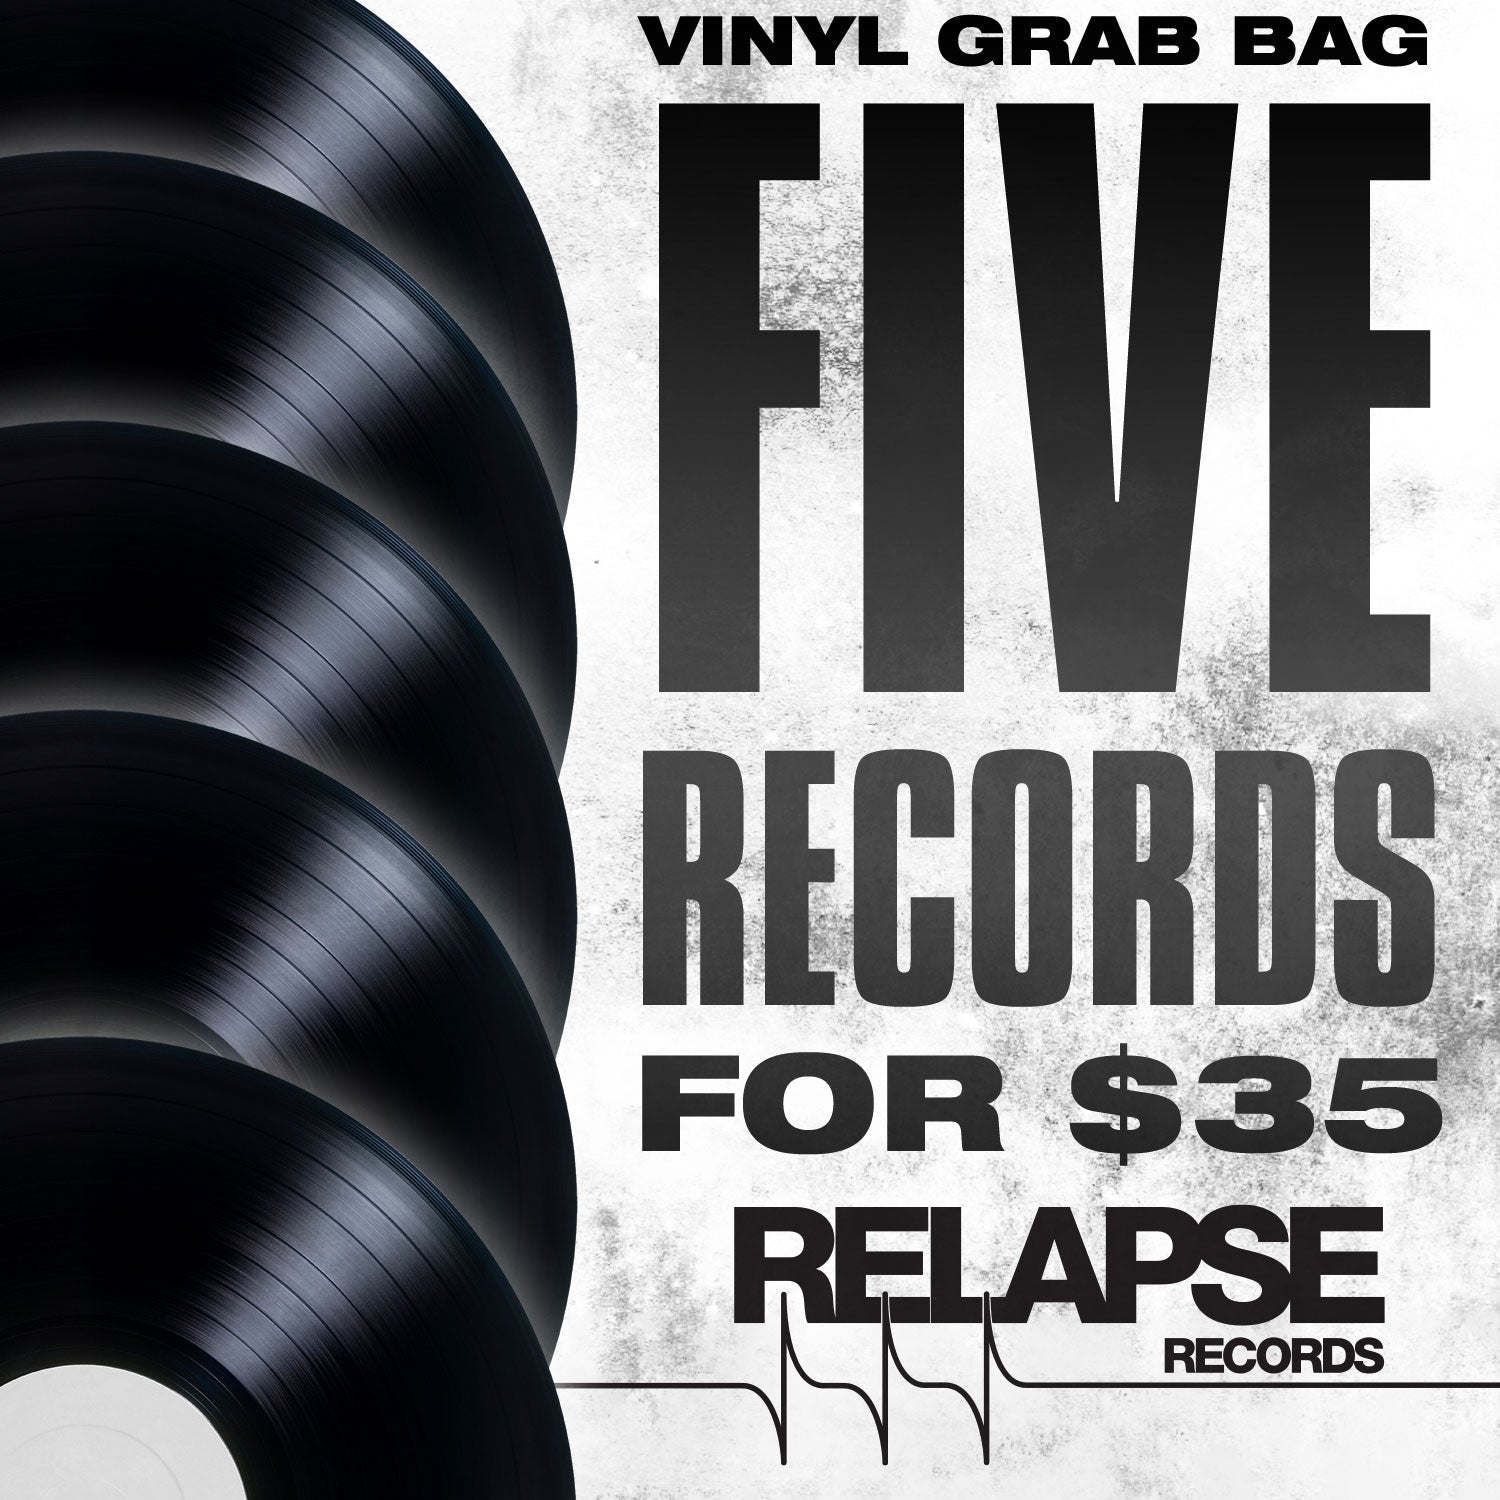 Grab Bag "5 LPs for $35 Grab Bag" 12"